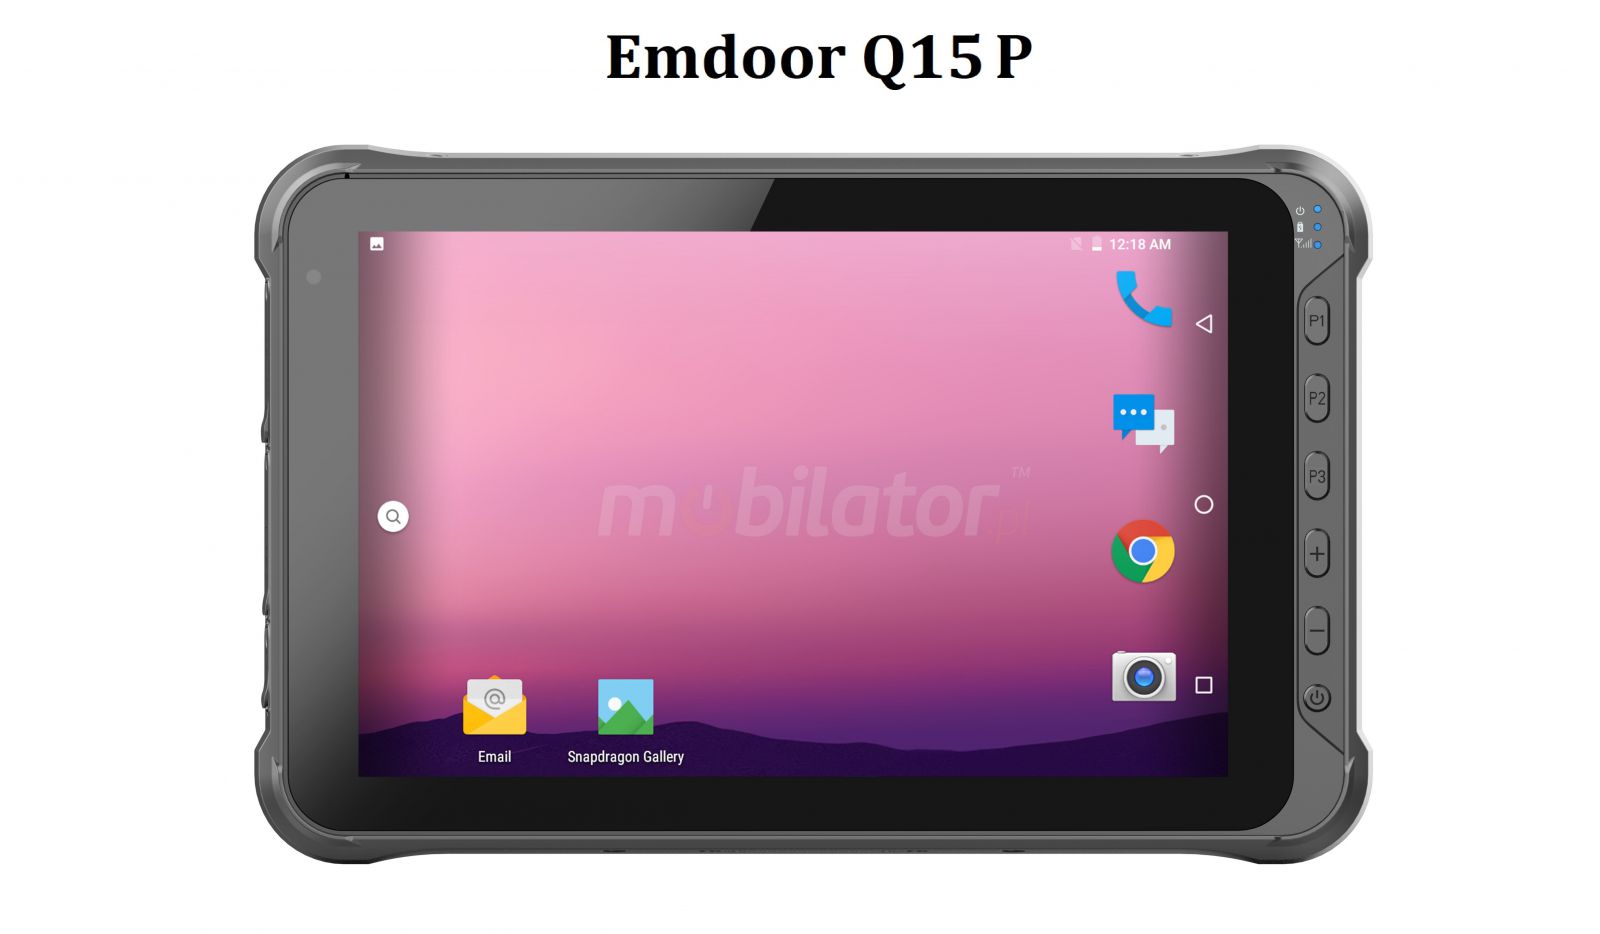 Emdoor Q15P v.3 - Odporny na upadki dziesiciocalowy tablet z Bluetooth 4.1, Androidem 10.0 GMS, 4GB RAM pamici, dyskiem 64GB, czytnikiem kodw 2D N3680 Honeywell, NFC  i 4G 